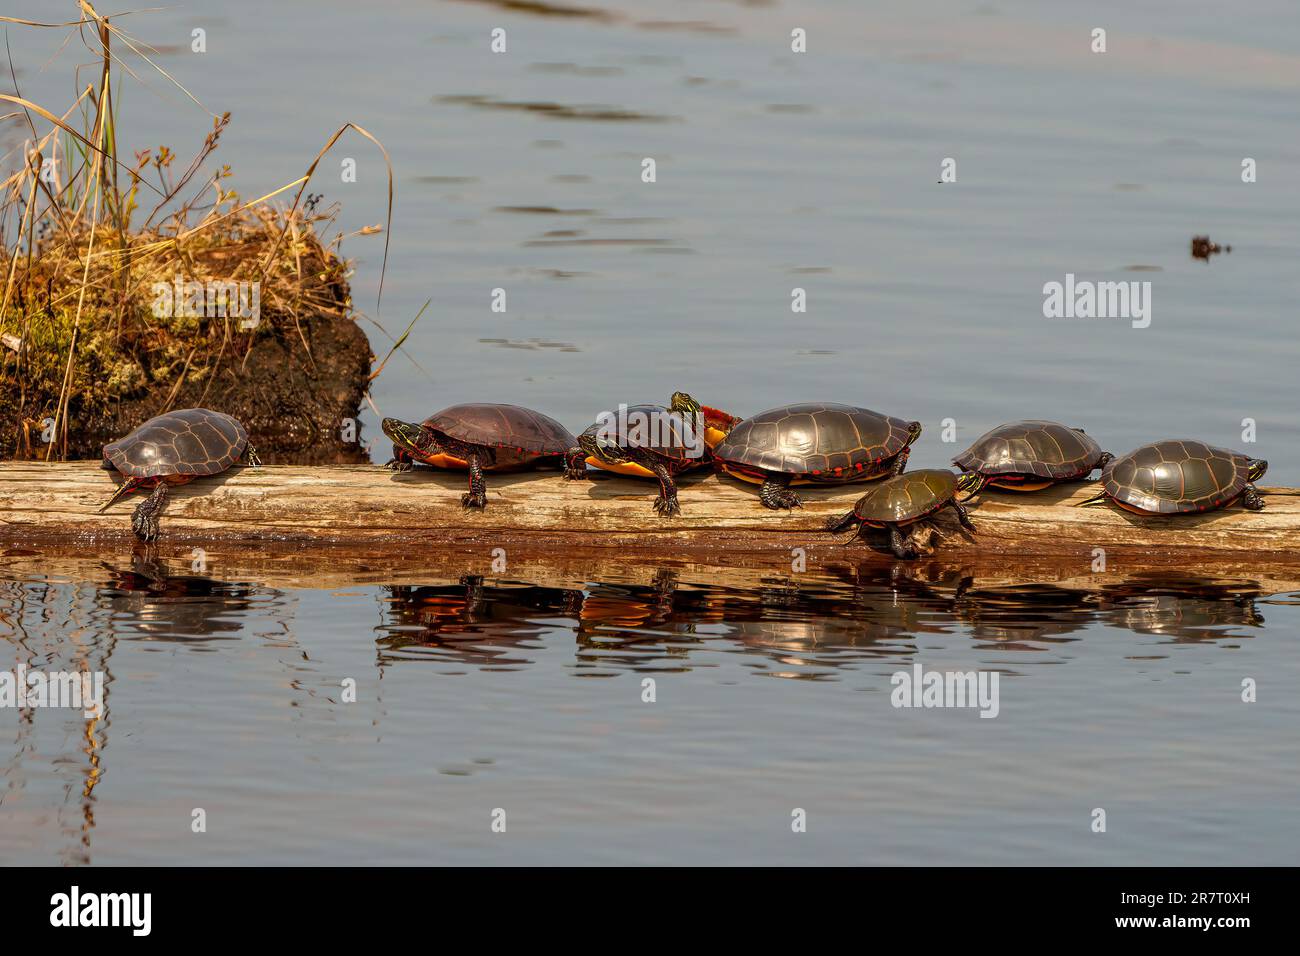 Eine Gruppe bemalter Schildkröten steht auf einem Baumstamm mit Hintergrund- und Vordergrundwasser und Reflexion im Wasser in ihrer Umgebung. Schildkröte. Kulissen. Stockfoto